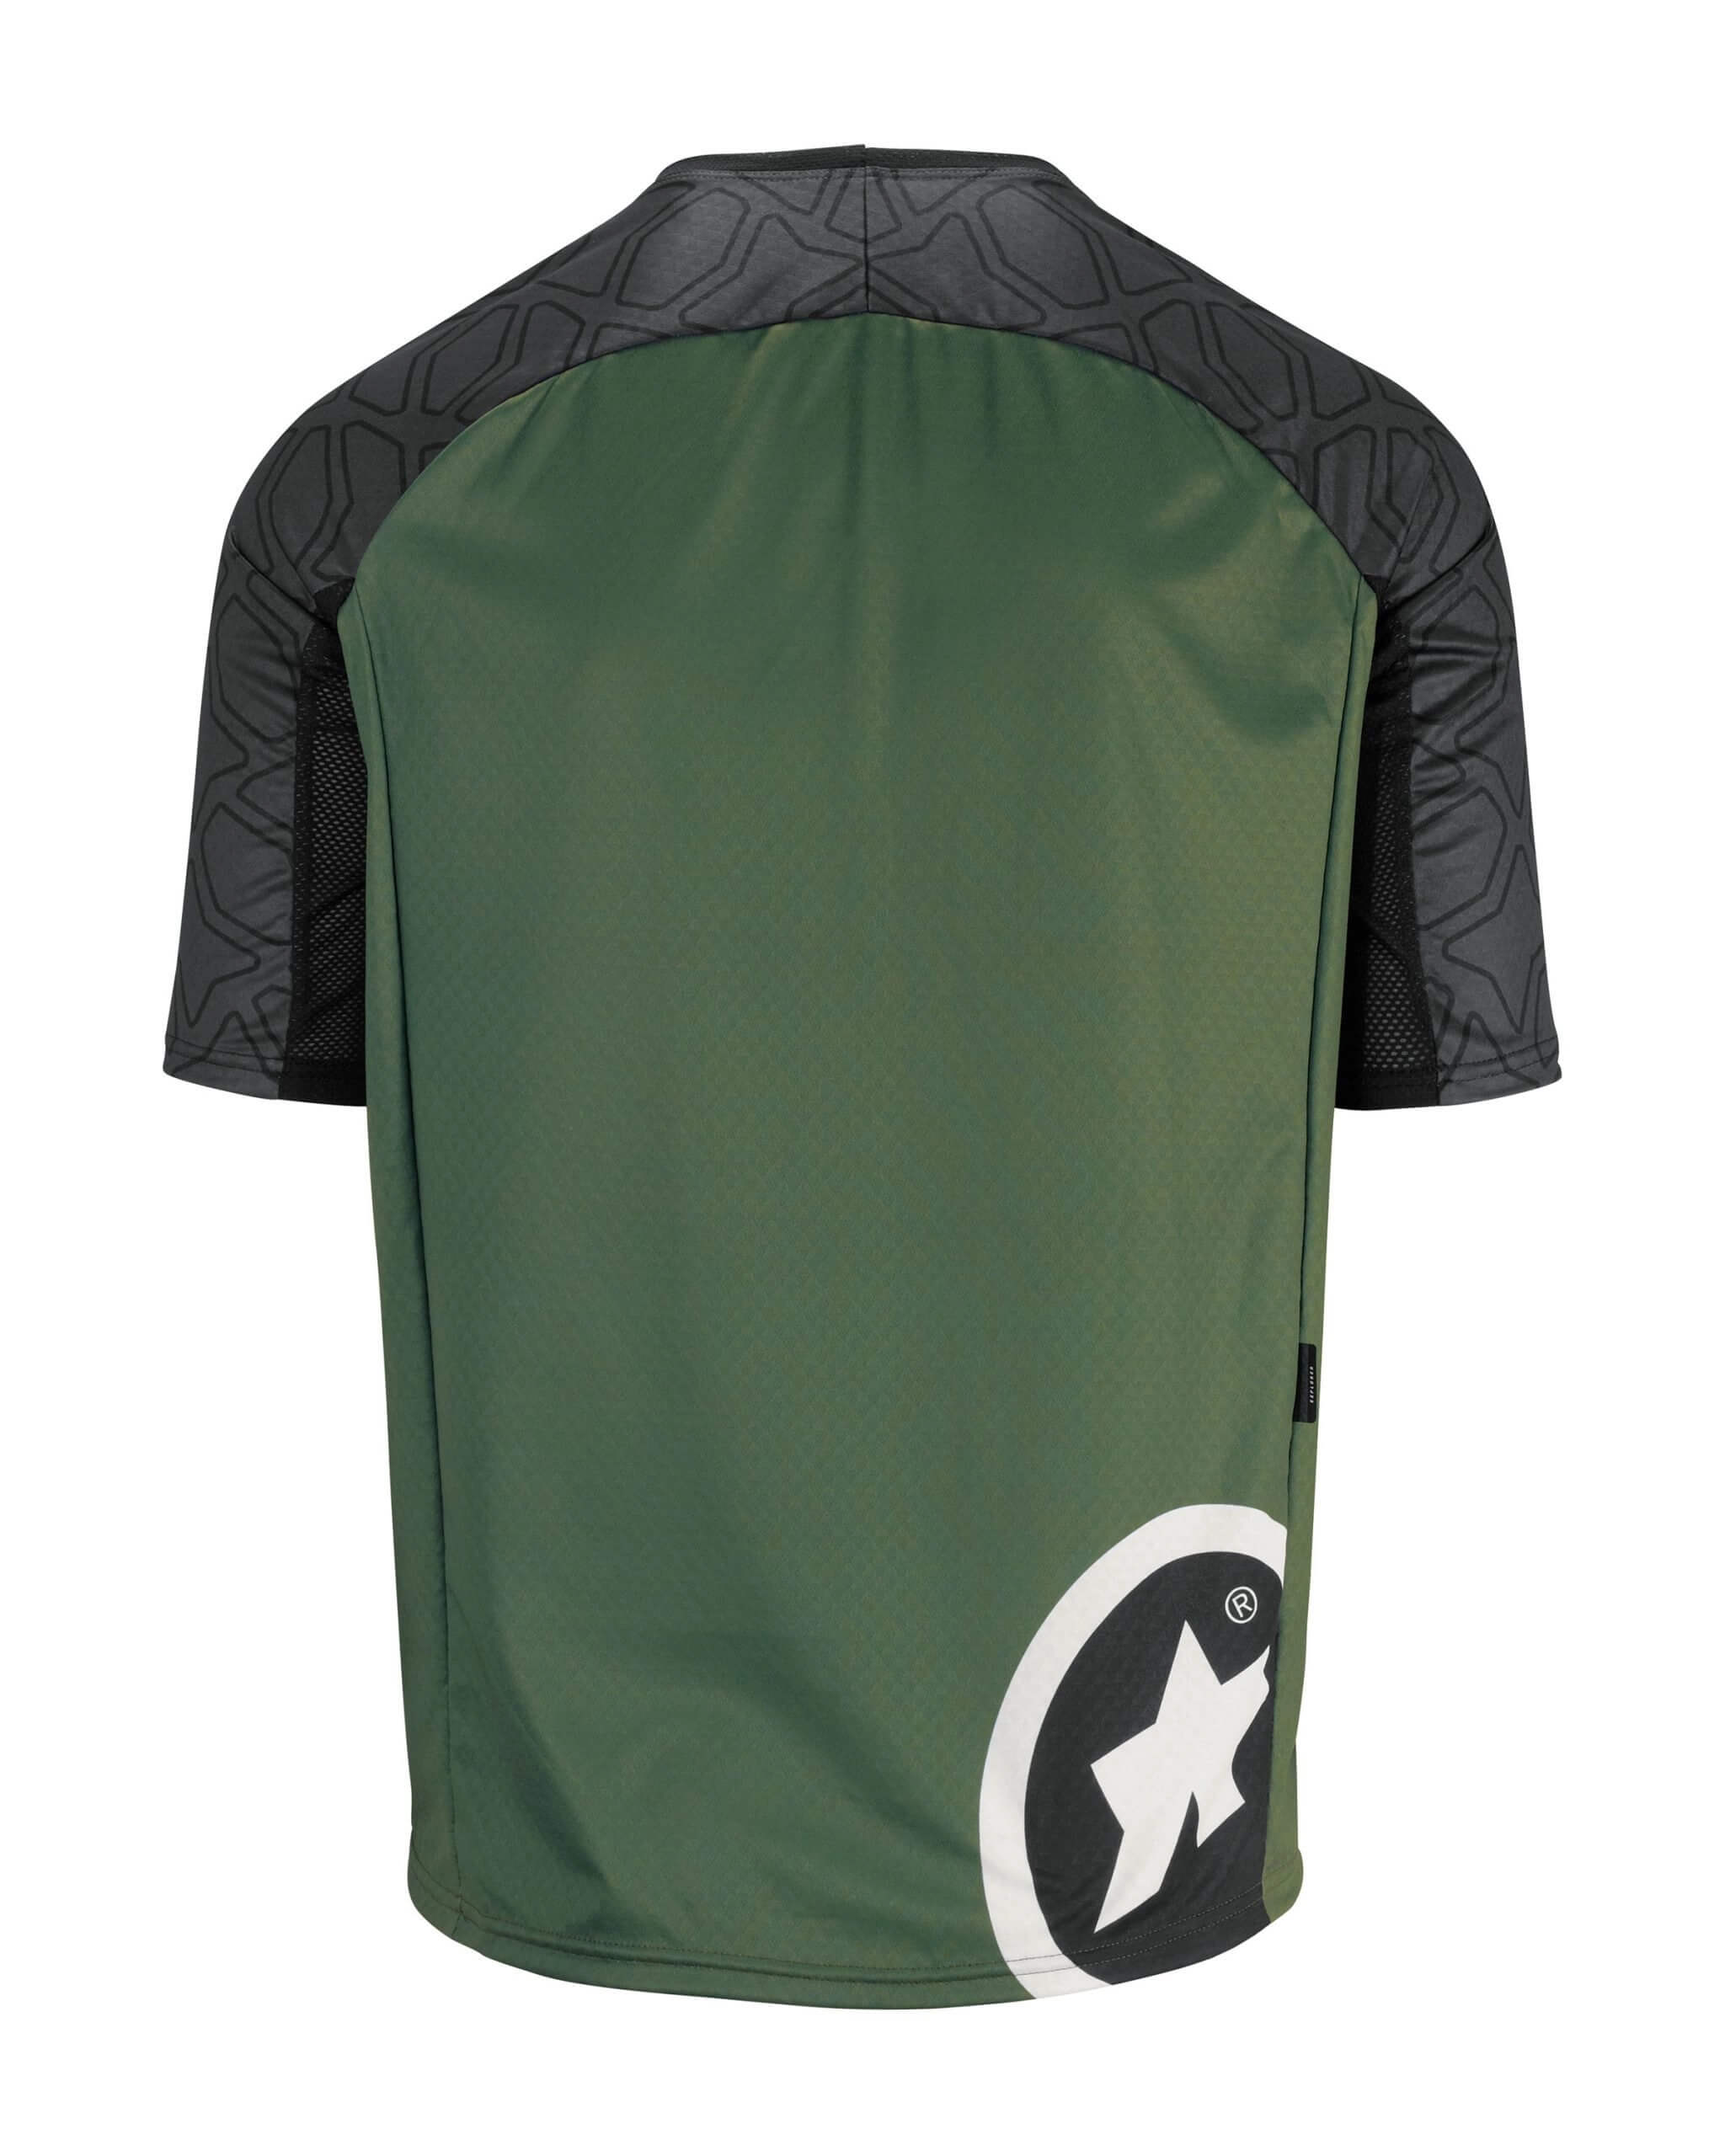 Джерсі ASSOS Trail SS, кор. рукав, чоловіче, зелене з чорним, XL фото 2